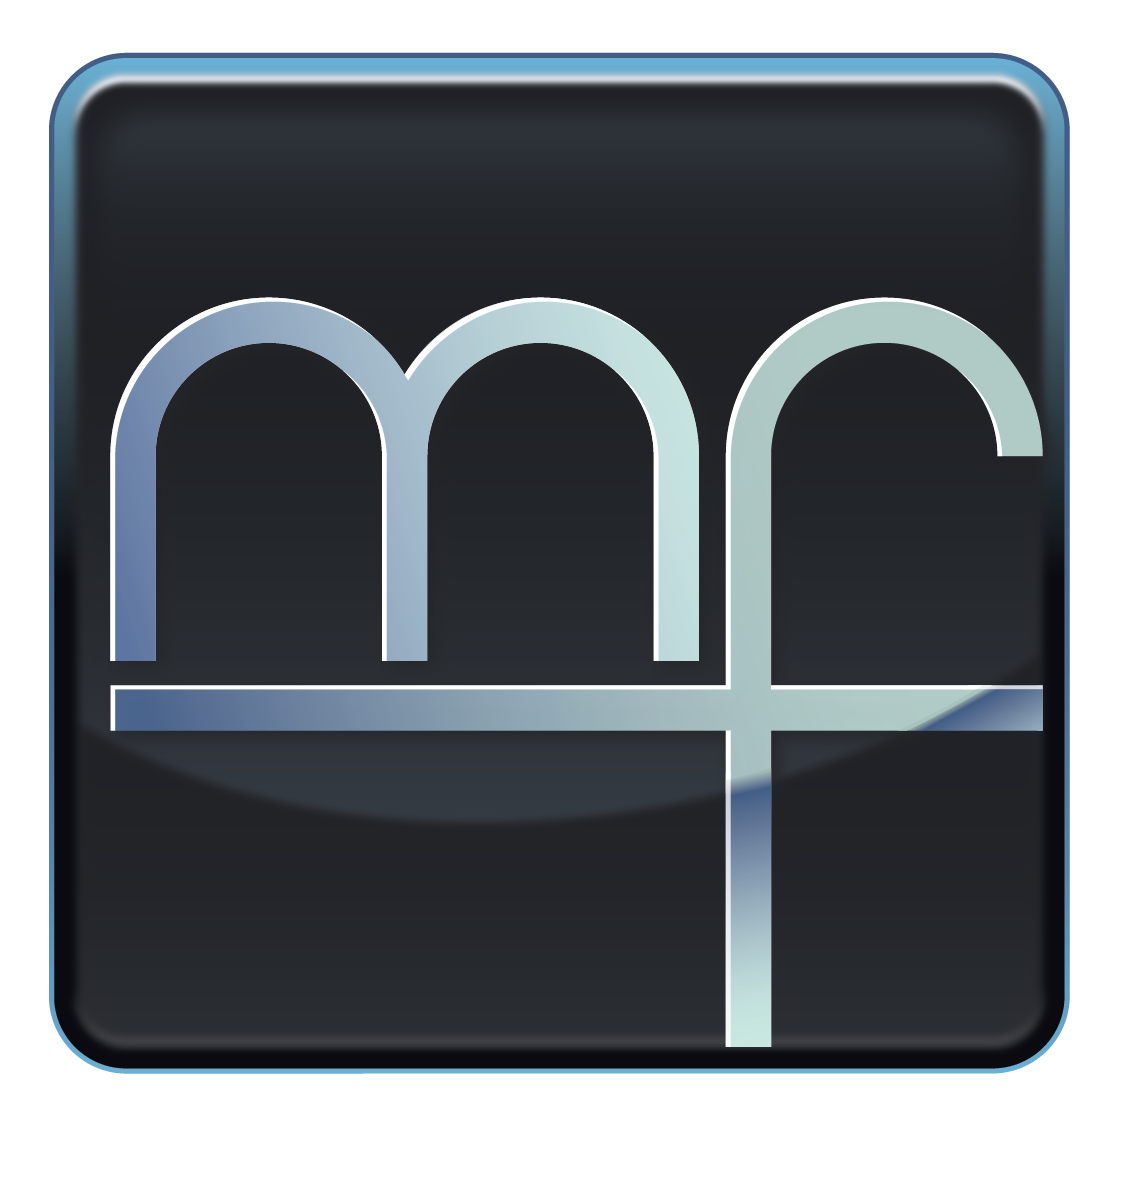 Michael Fridley & Associates, LLC.